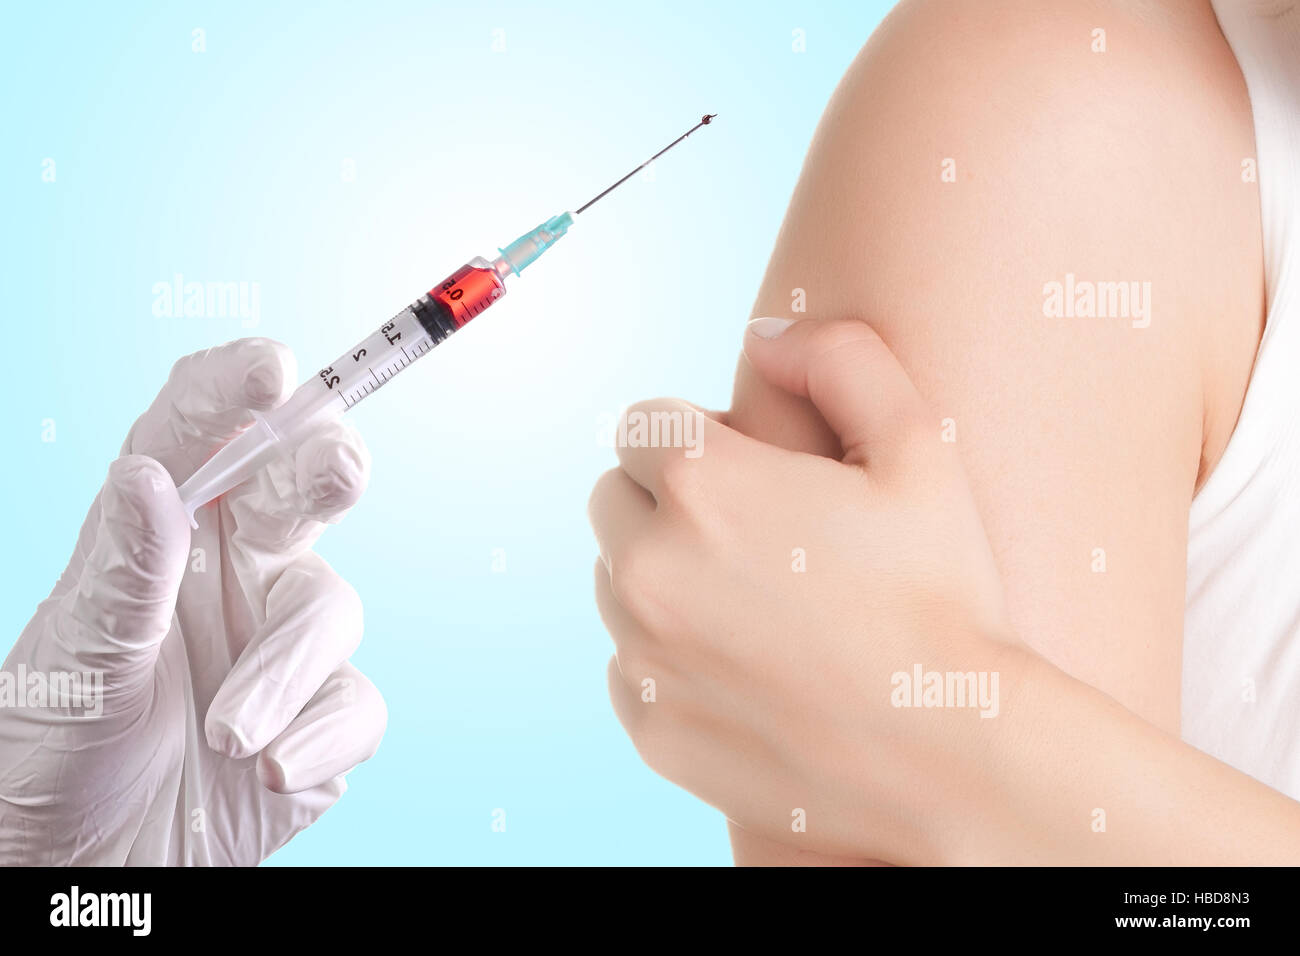 Hand holding a syringe Stock Photo